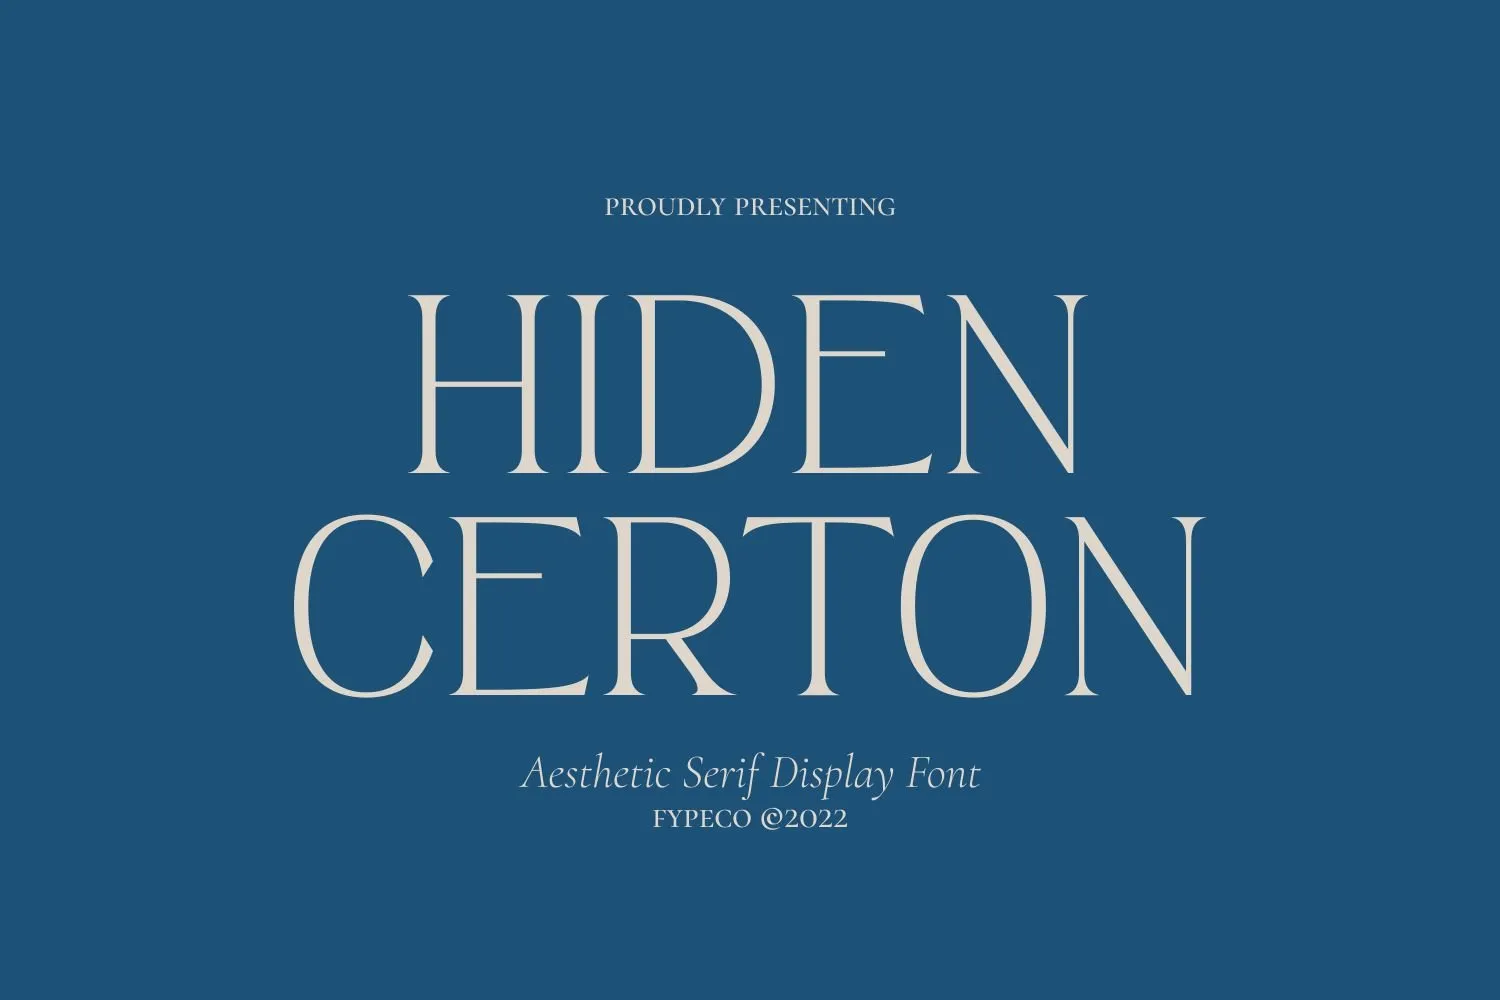 Hiden Certon Font